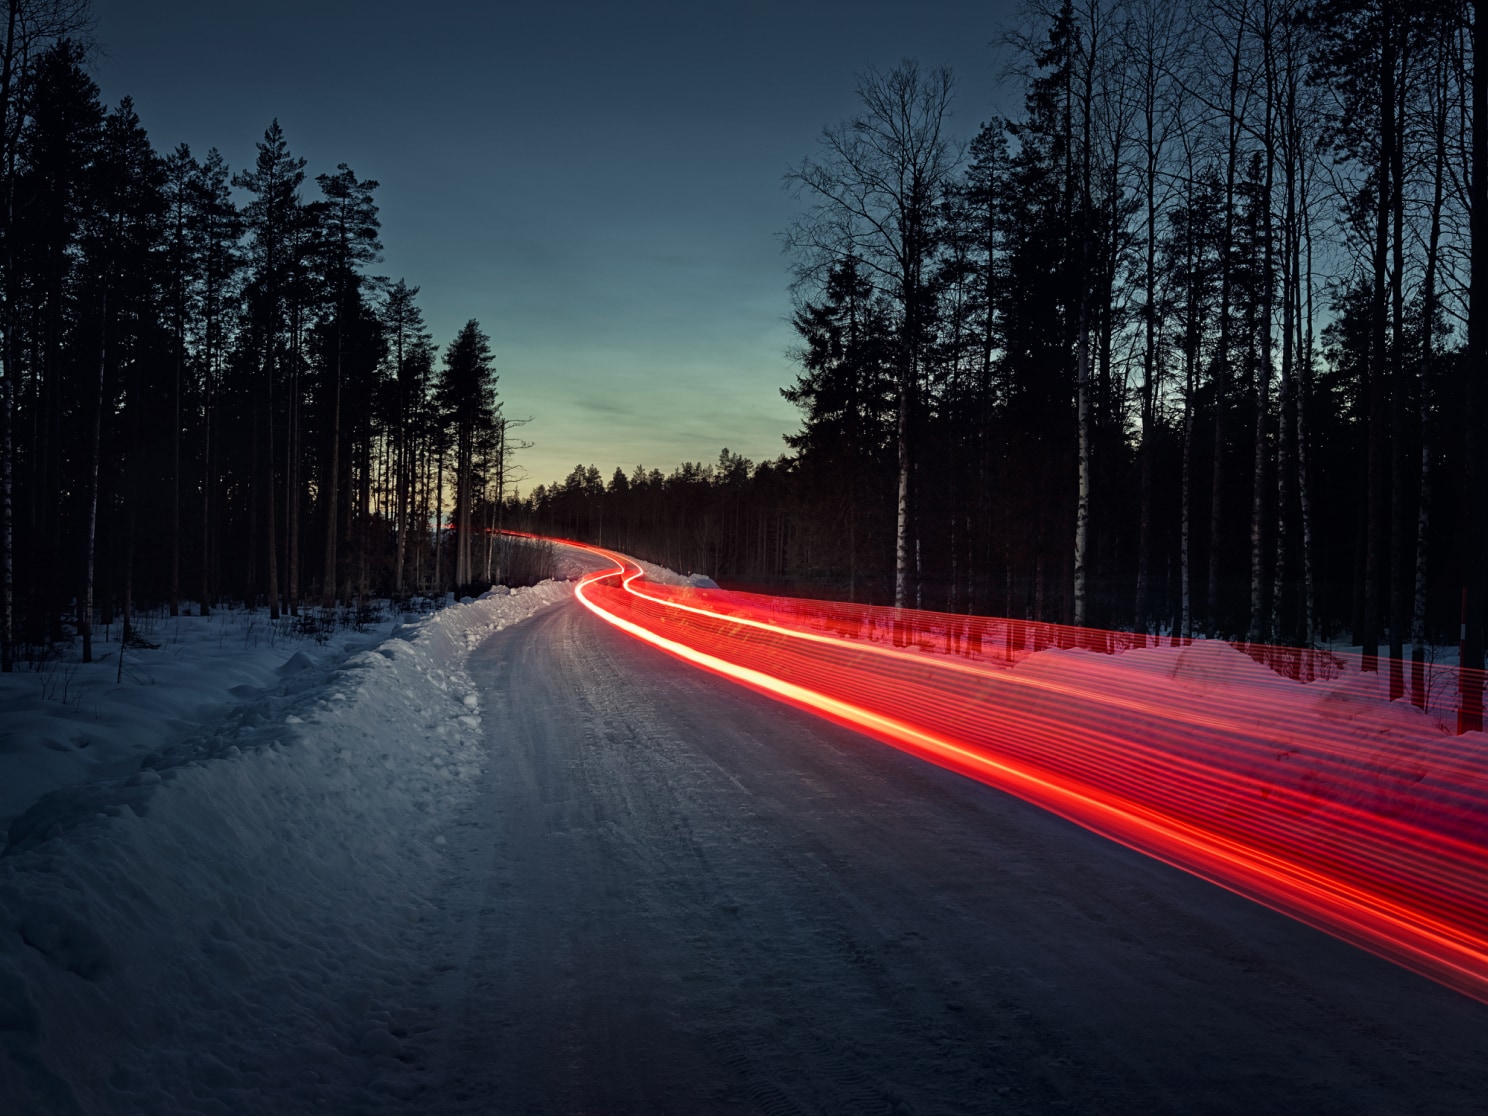 Una toma con retardo de lo que parece una estela de luces traseras rojas en una carretera helada.